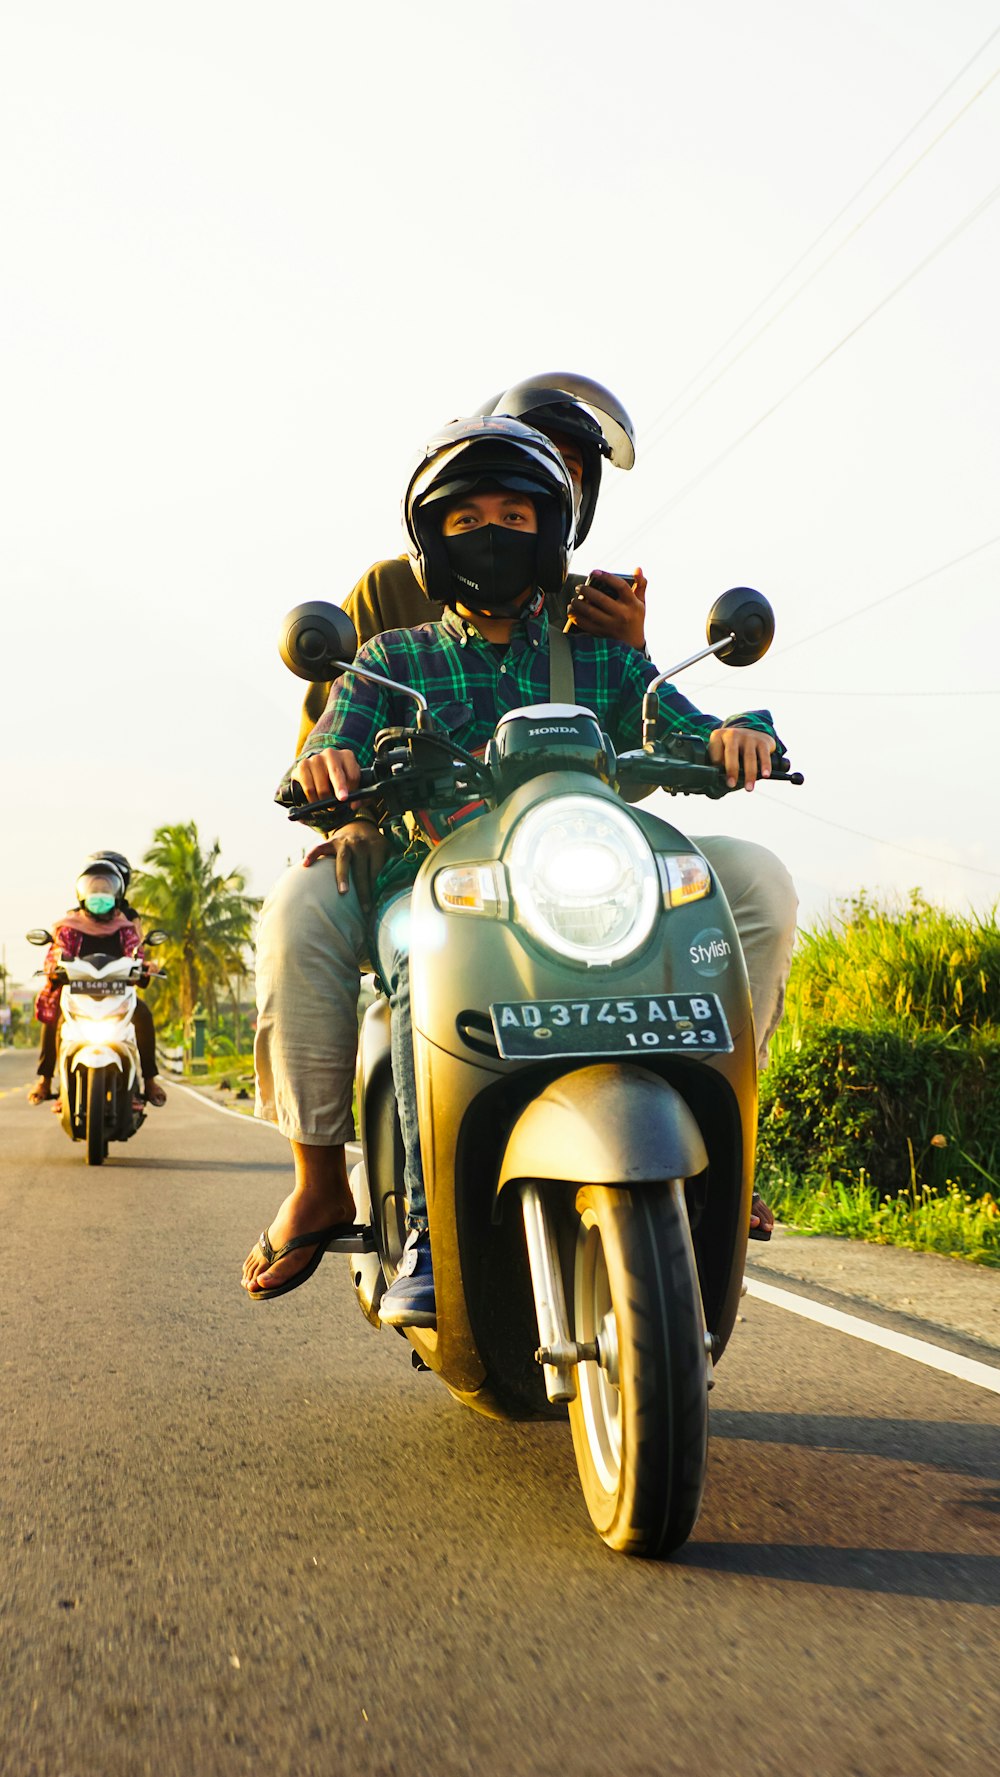 Personas que conducen motocicletas en la carretera durante el día